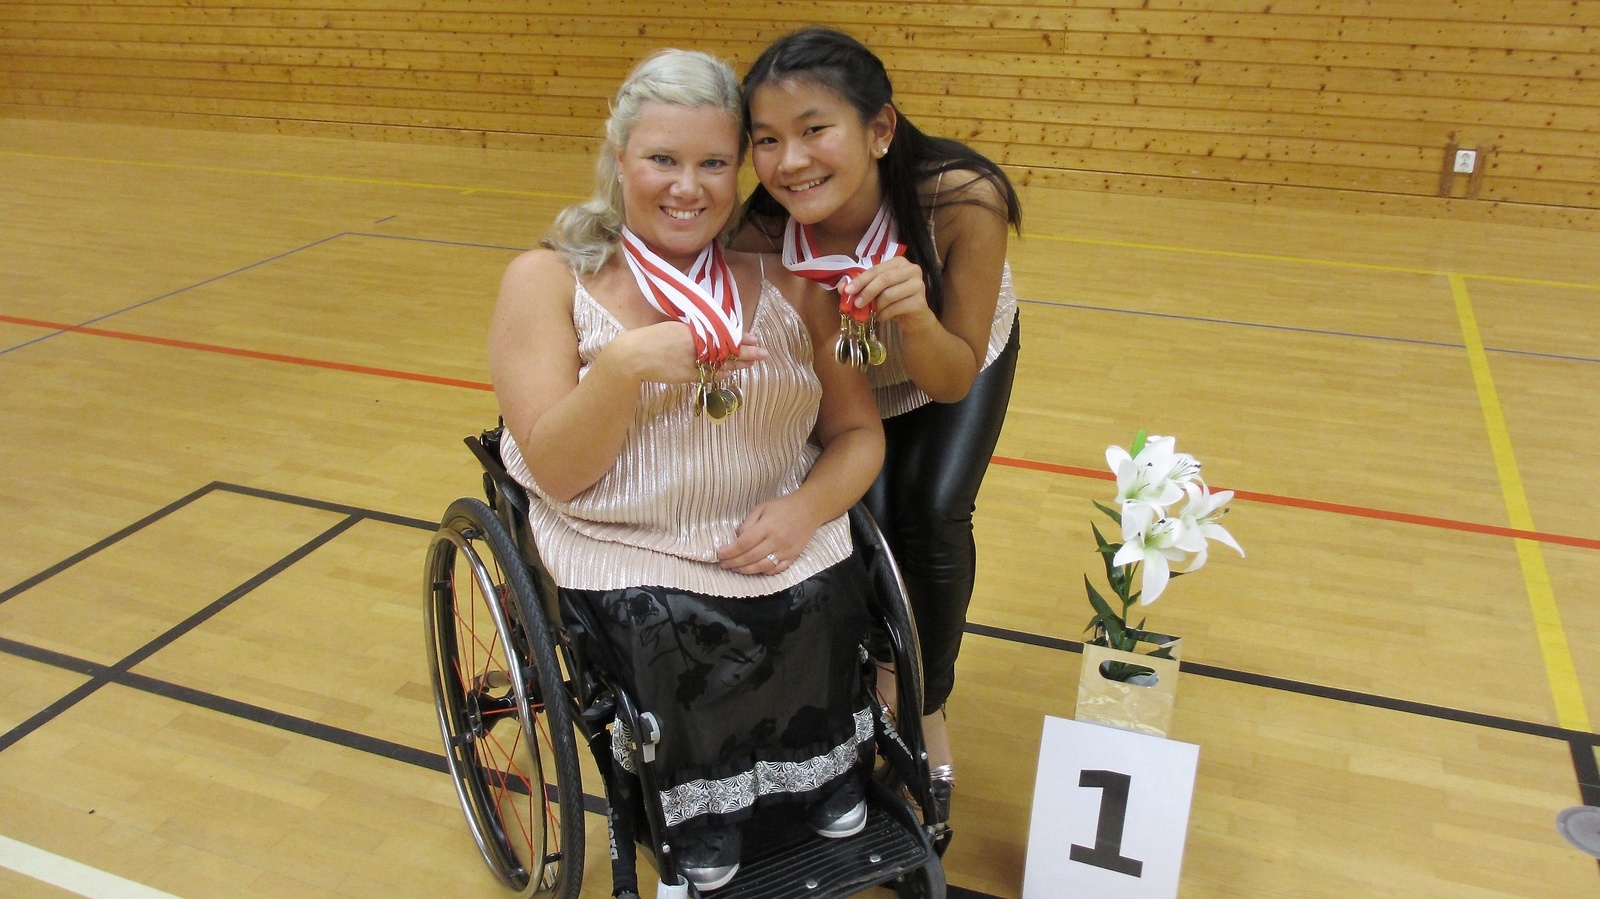 Systrarna Hedman kom hem från Västcupen med ett guld, fem silver och två bronsmedaljer. PRIVAT BILD